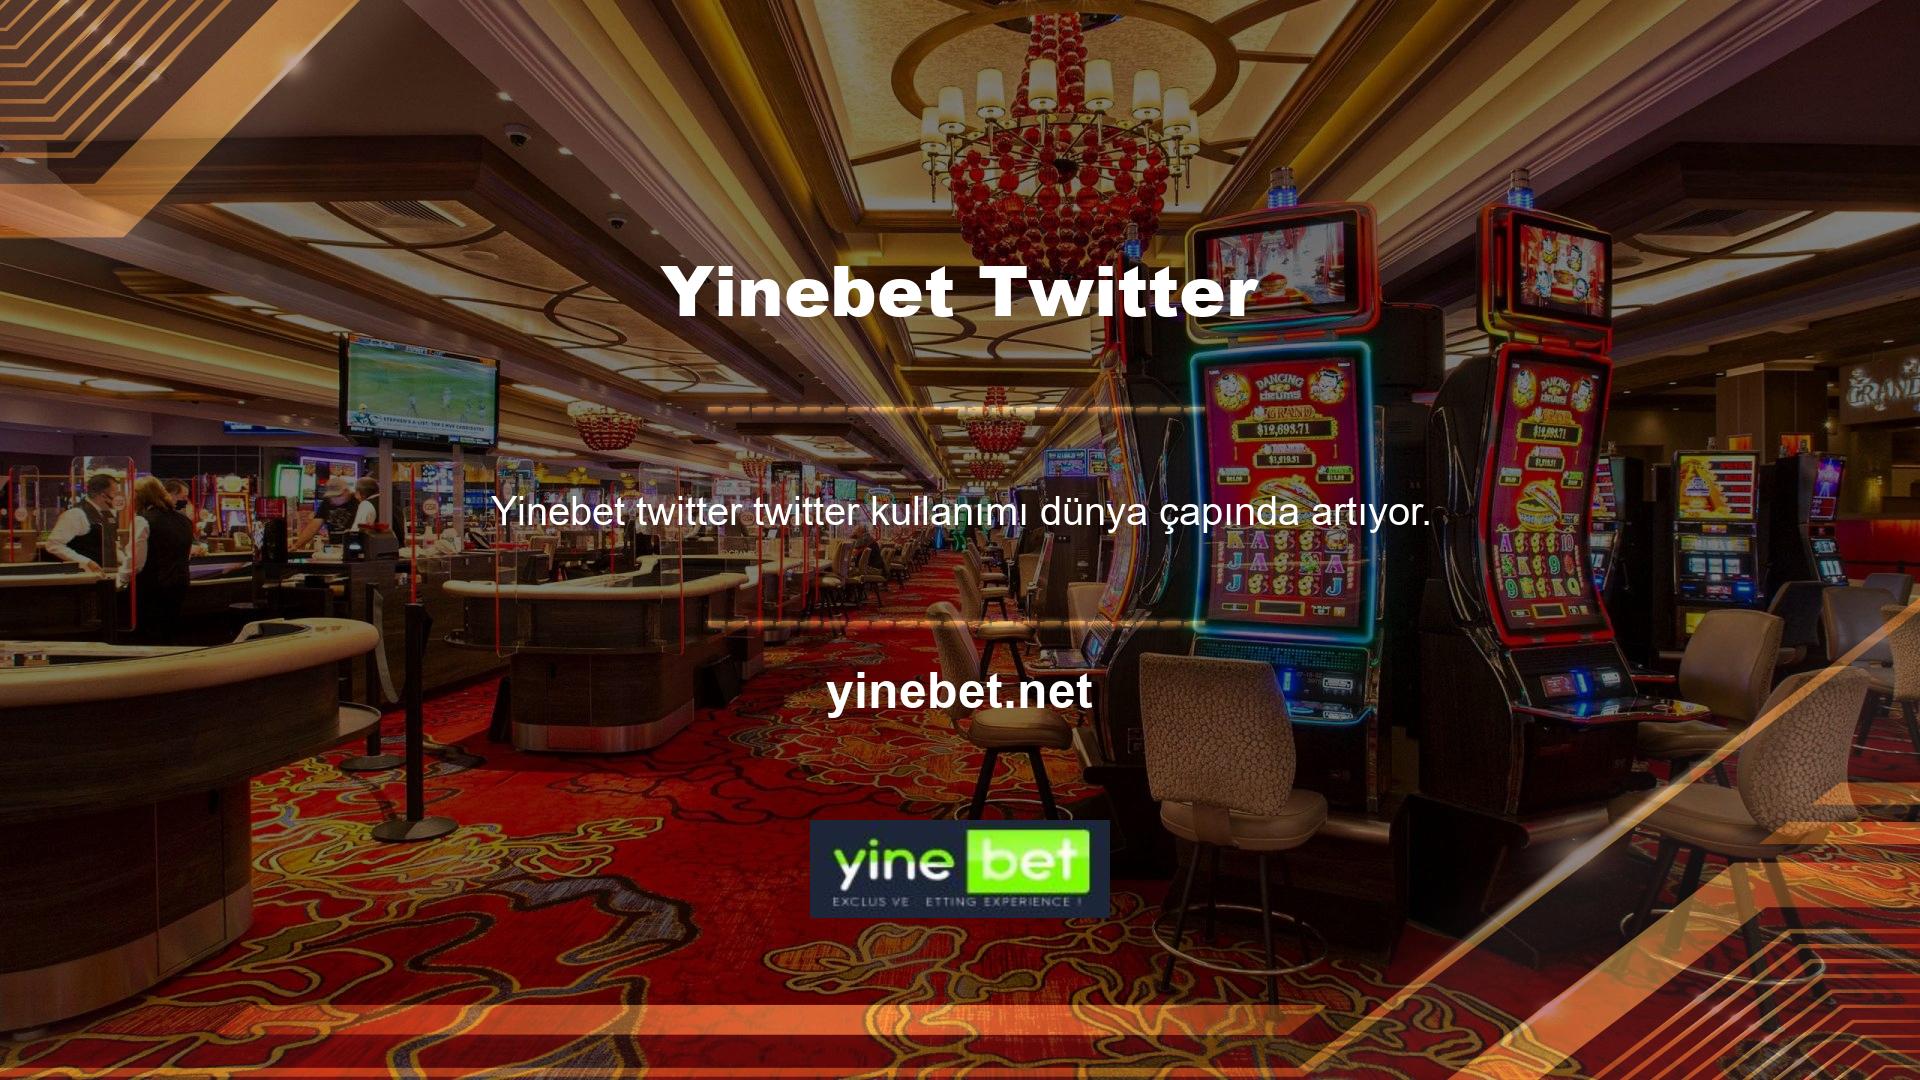 Sonuç olarak, casino siteleri, insanların bu sitelerde çok fazla zaman geçirdiğini fark etti ve resmi sosyal medya hesaplarını Twitter'da açtı